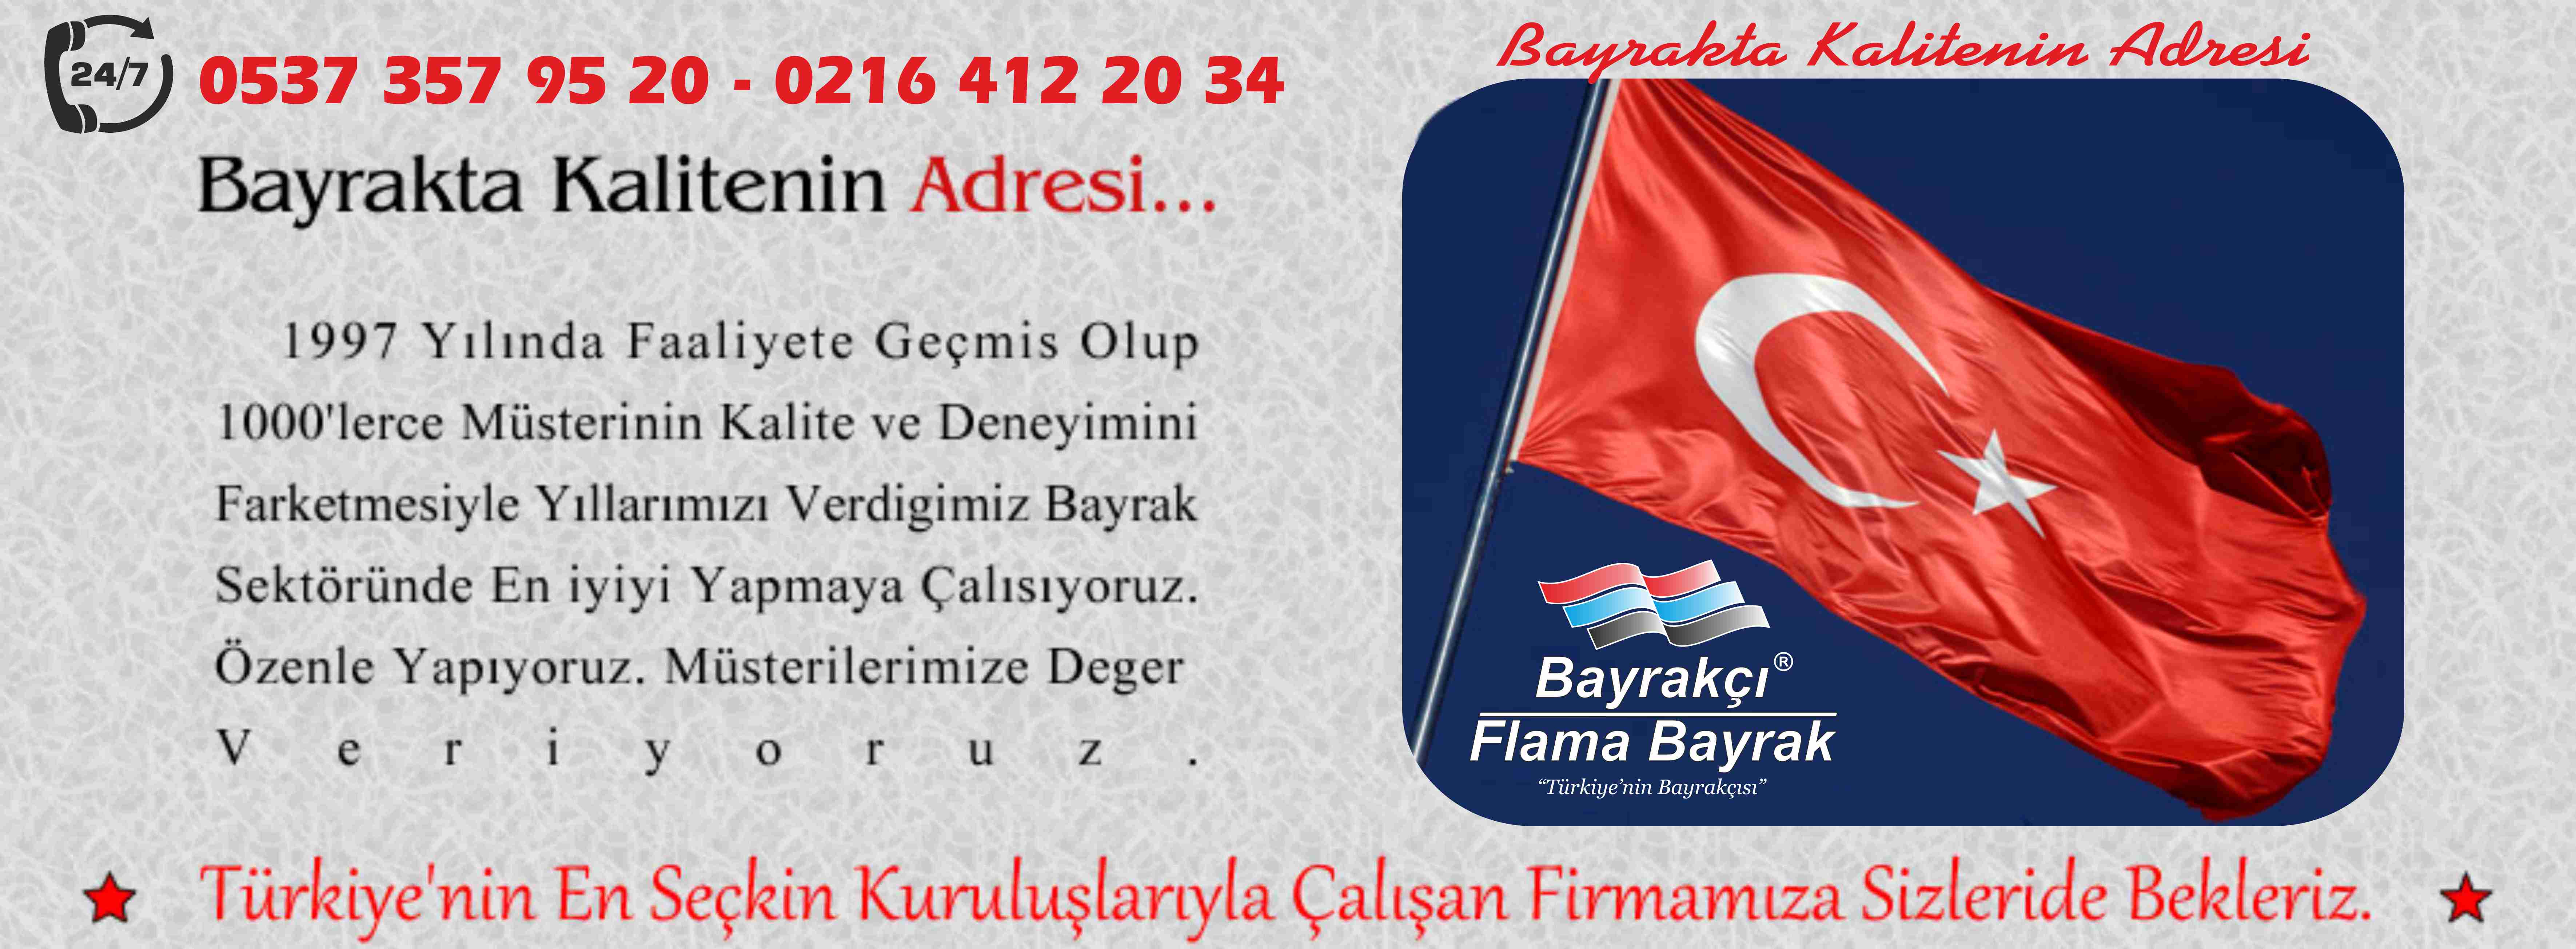 İstanbul Flama Bayrak Üretimi - Bayrak Satışı